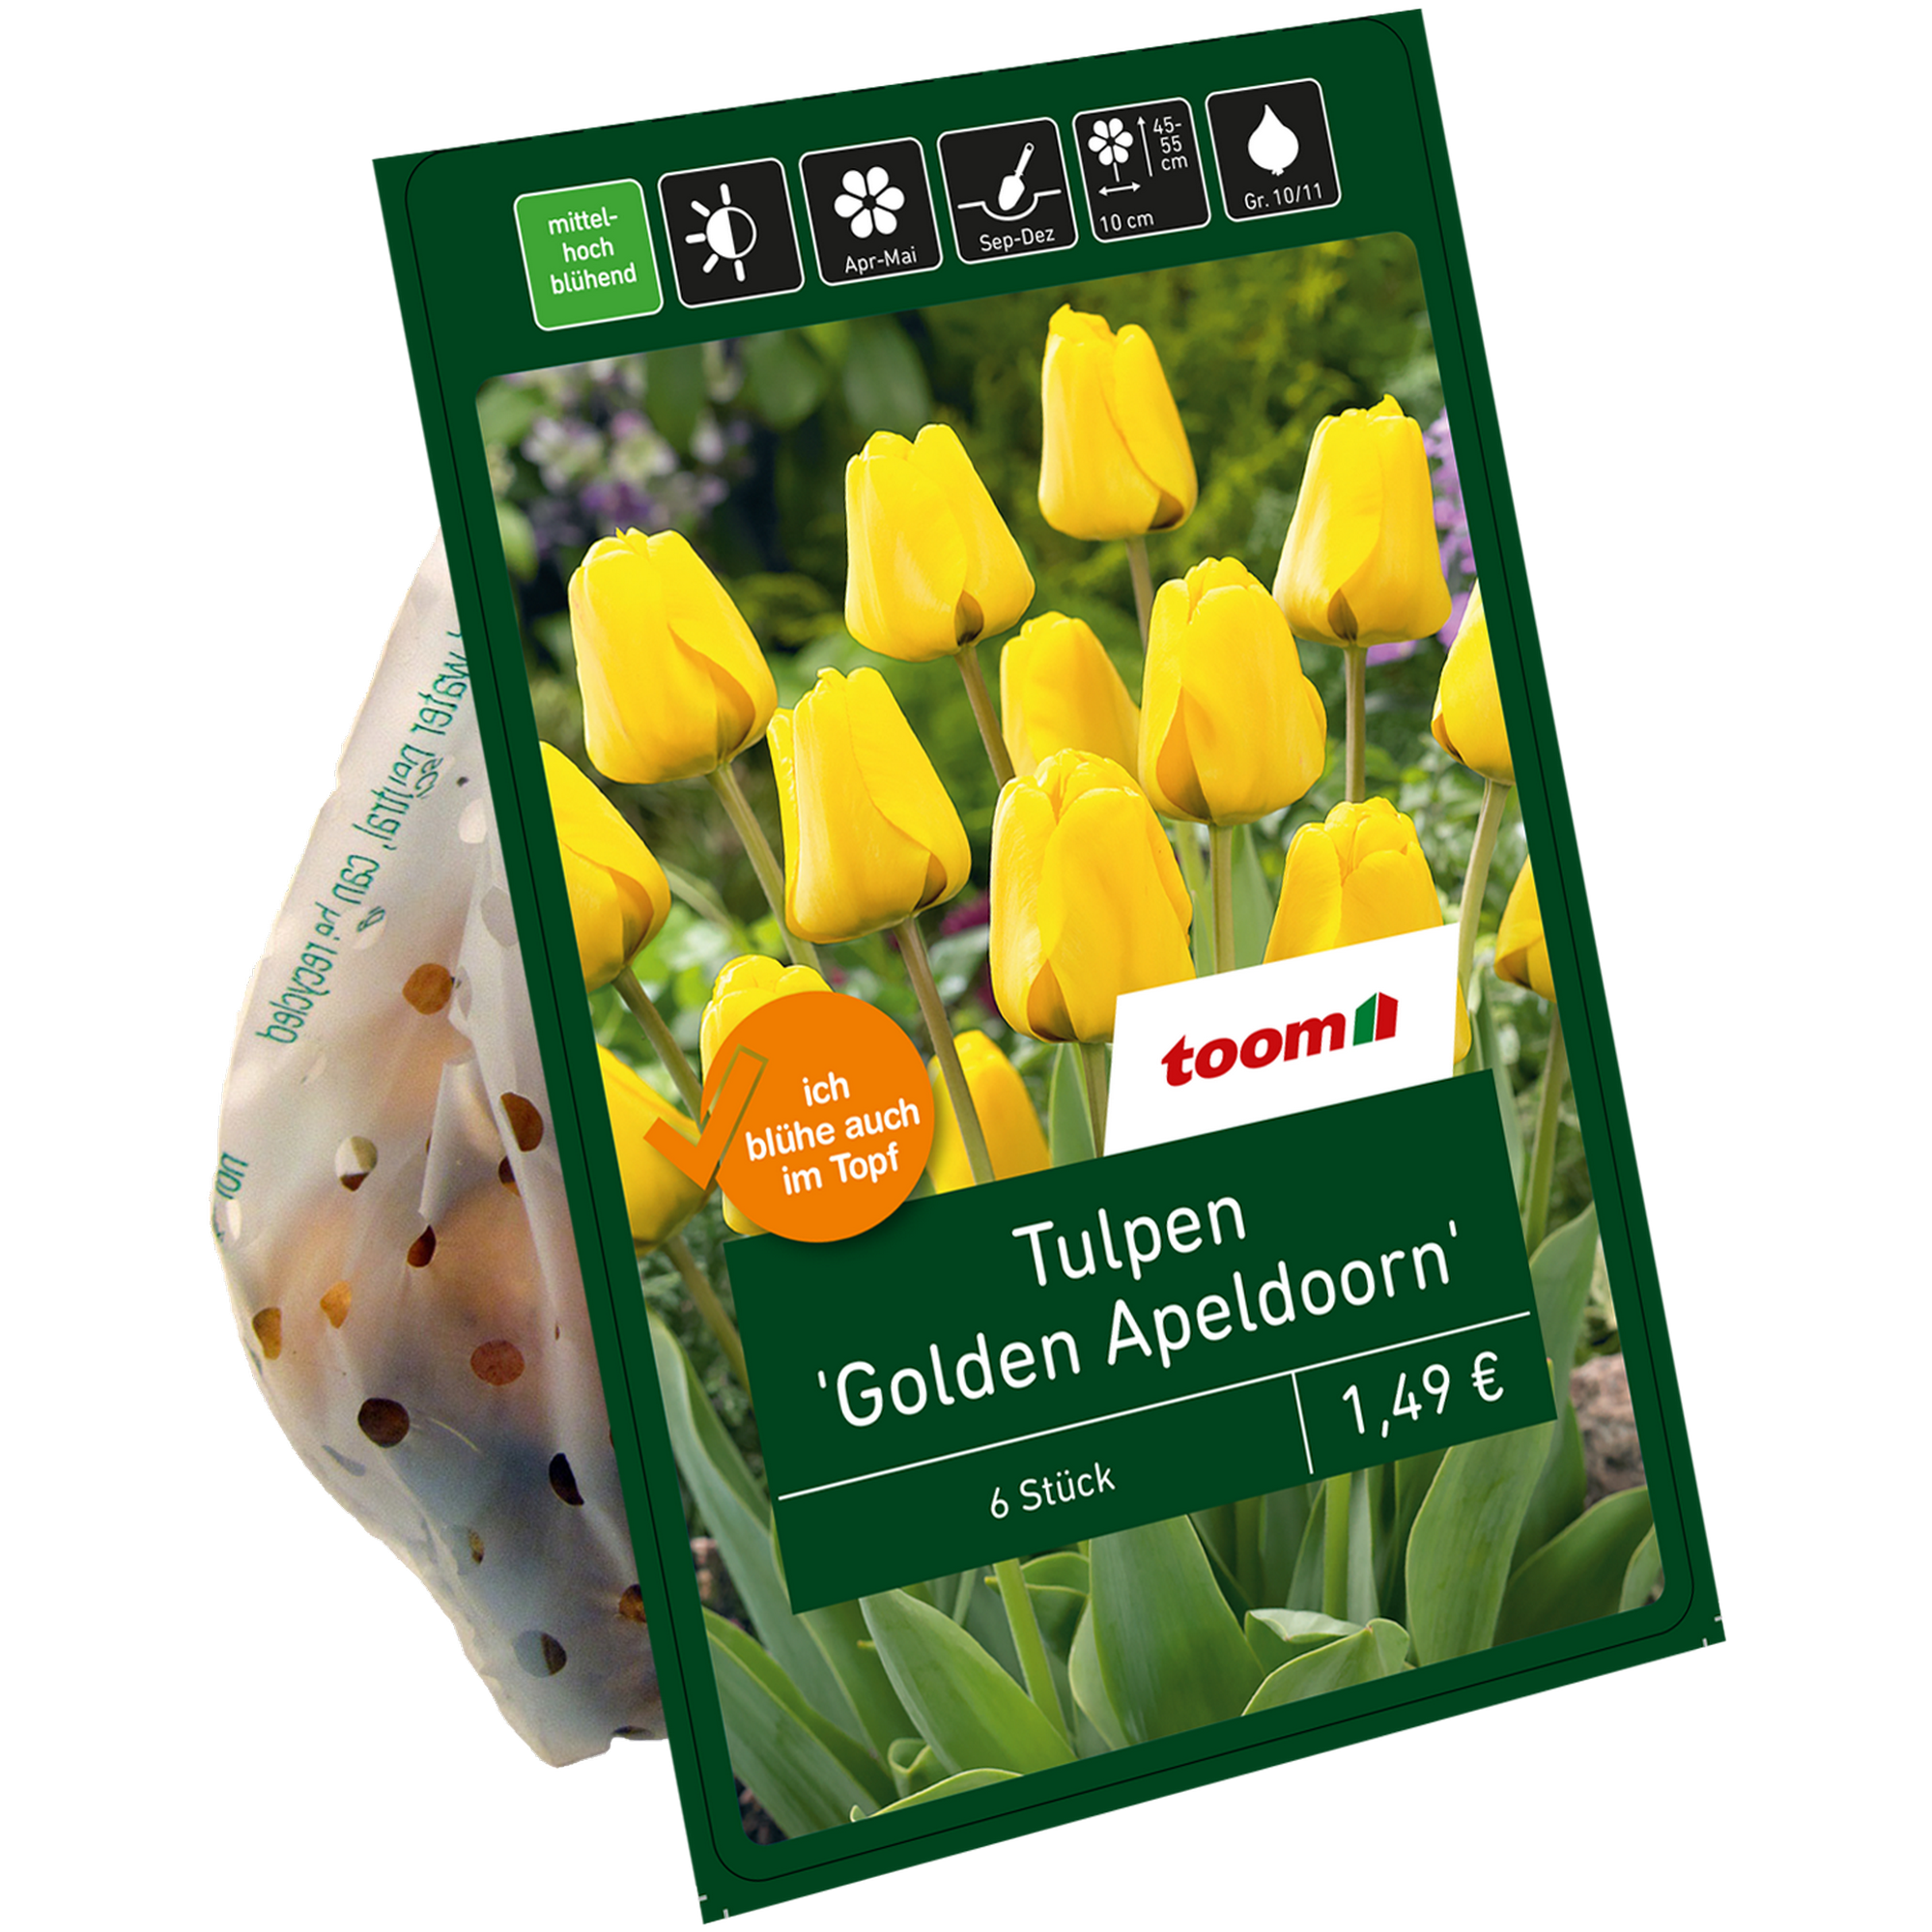 Tulpen 'Golden Apeldoorn' gelb 6 Zwiebeln + product picture